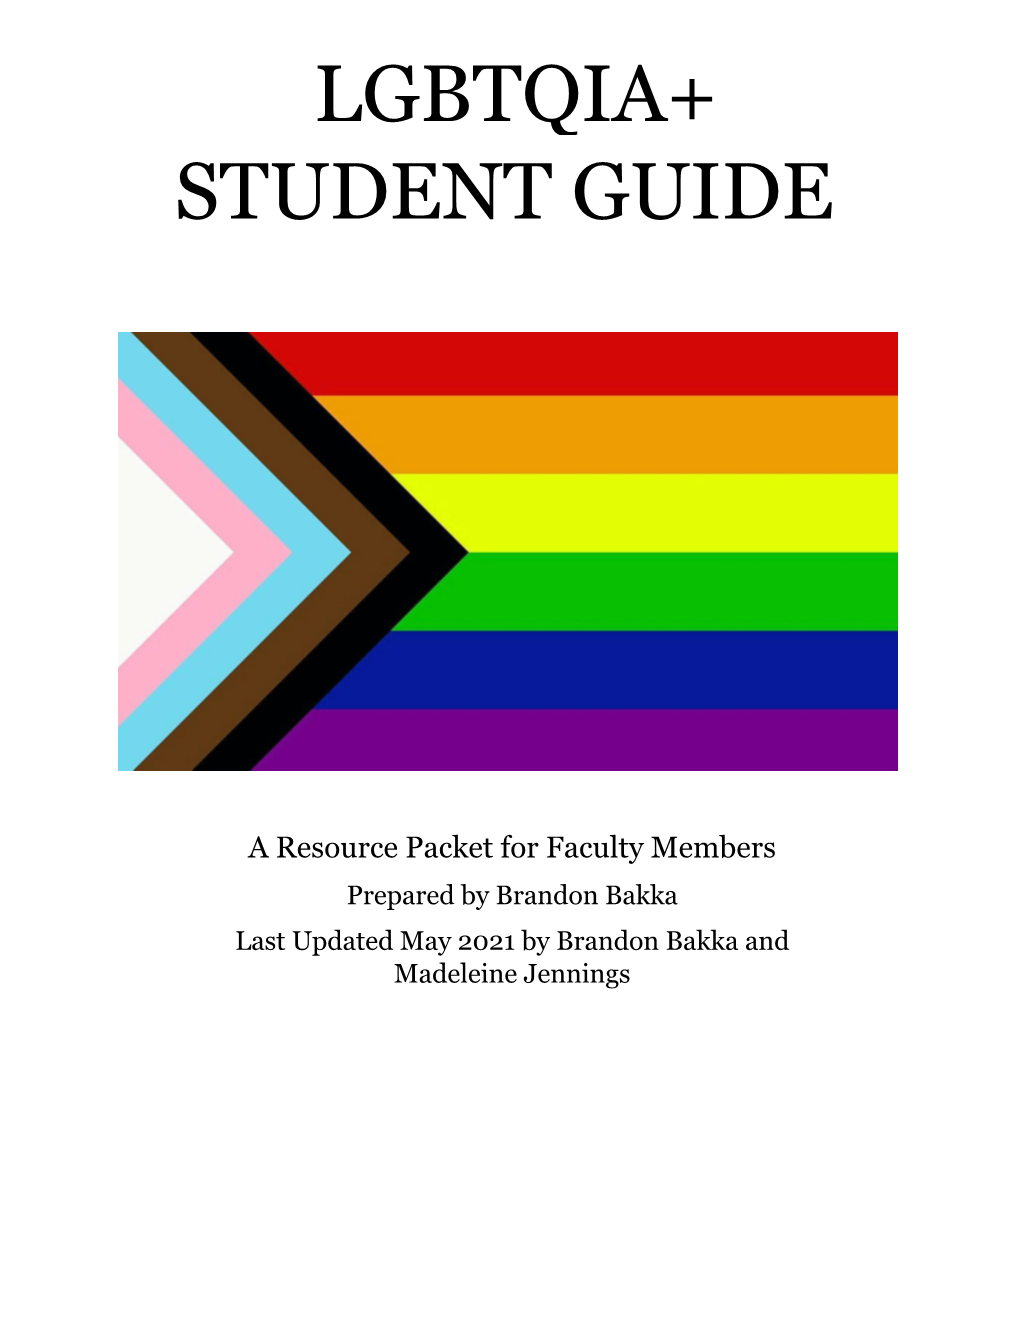 LGBTQIA+ Student Guide